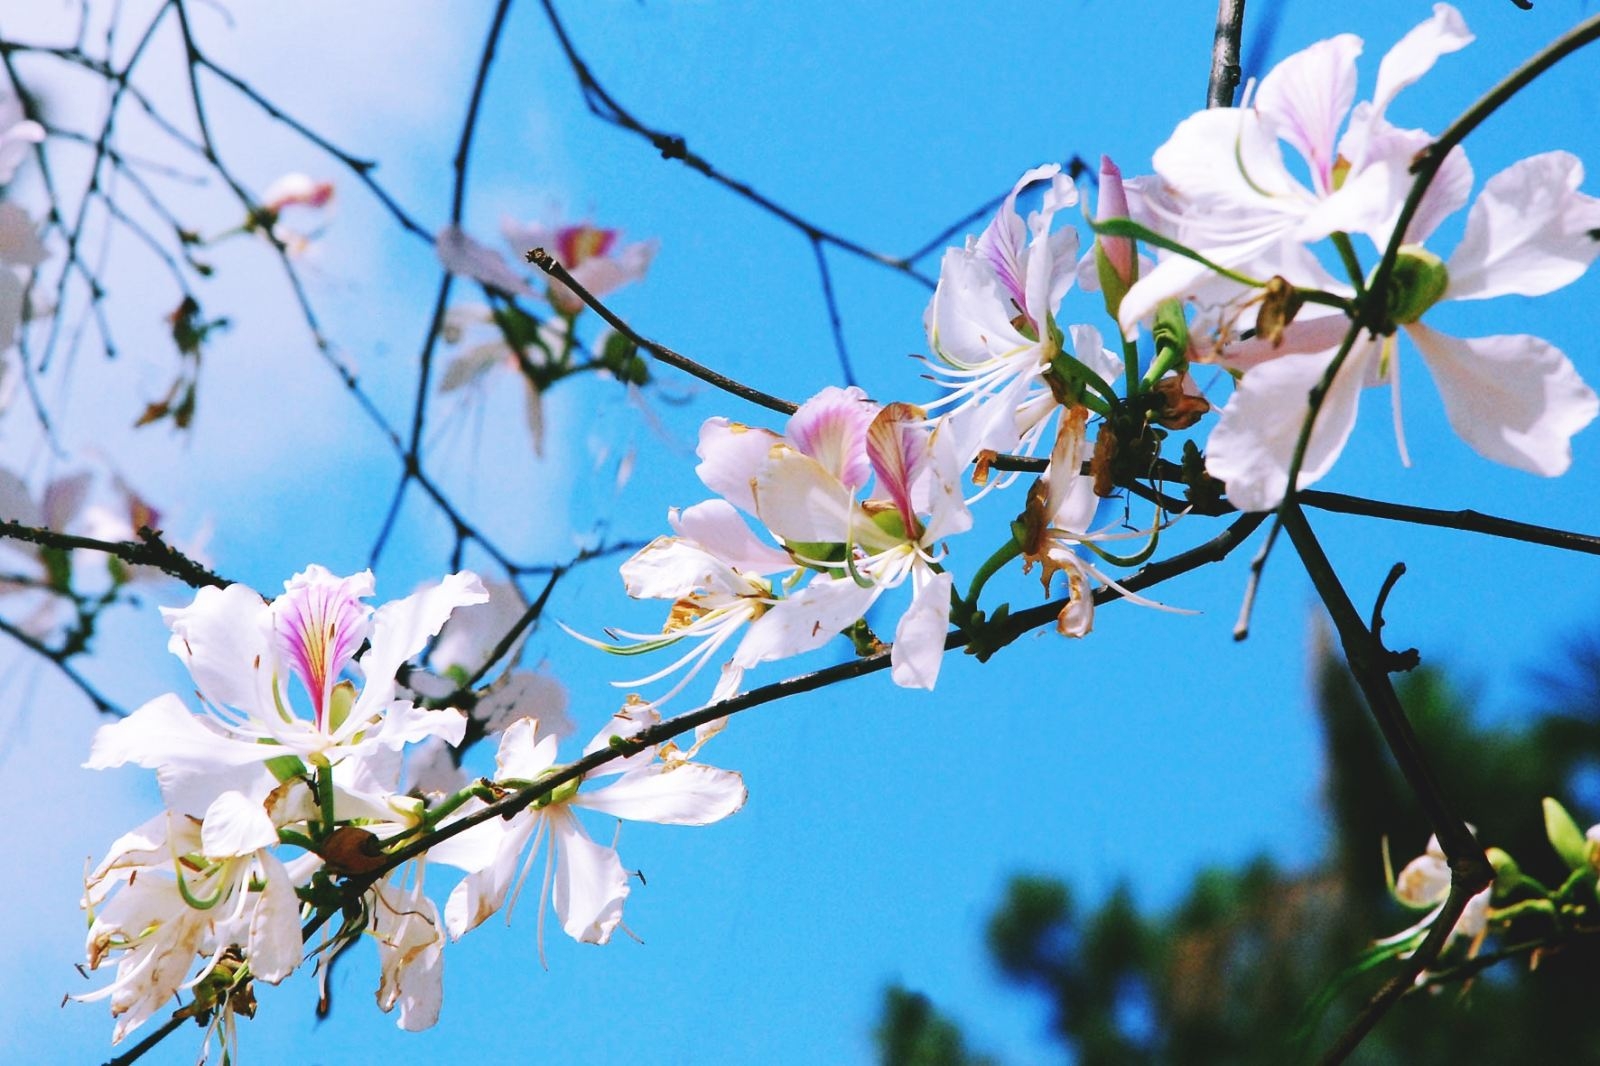 Điện Biên tháng 3 ngập tràn hoa ban, lạc lối giữa một bầu trời ngợp hoa trắng đua nhau khoe sắc